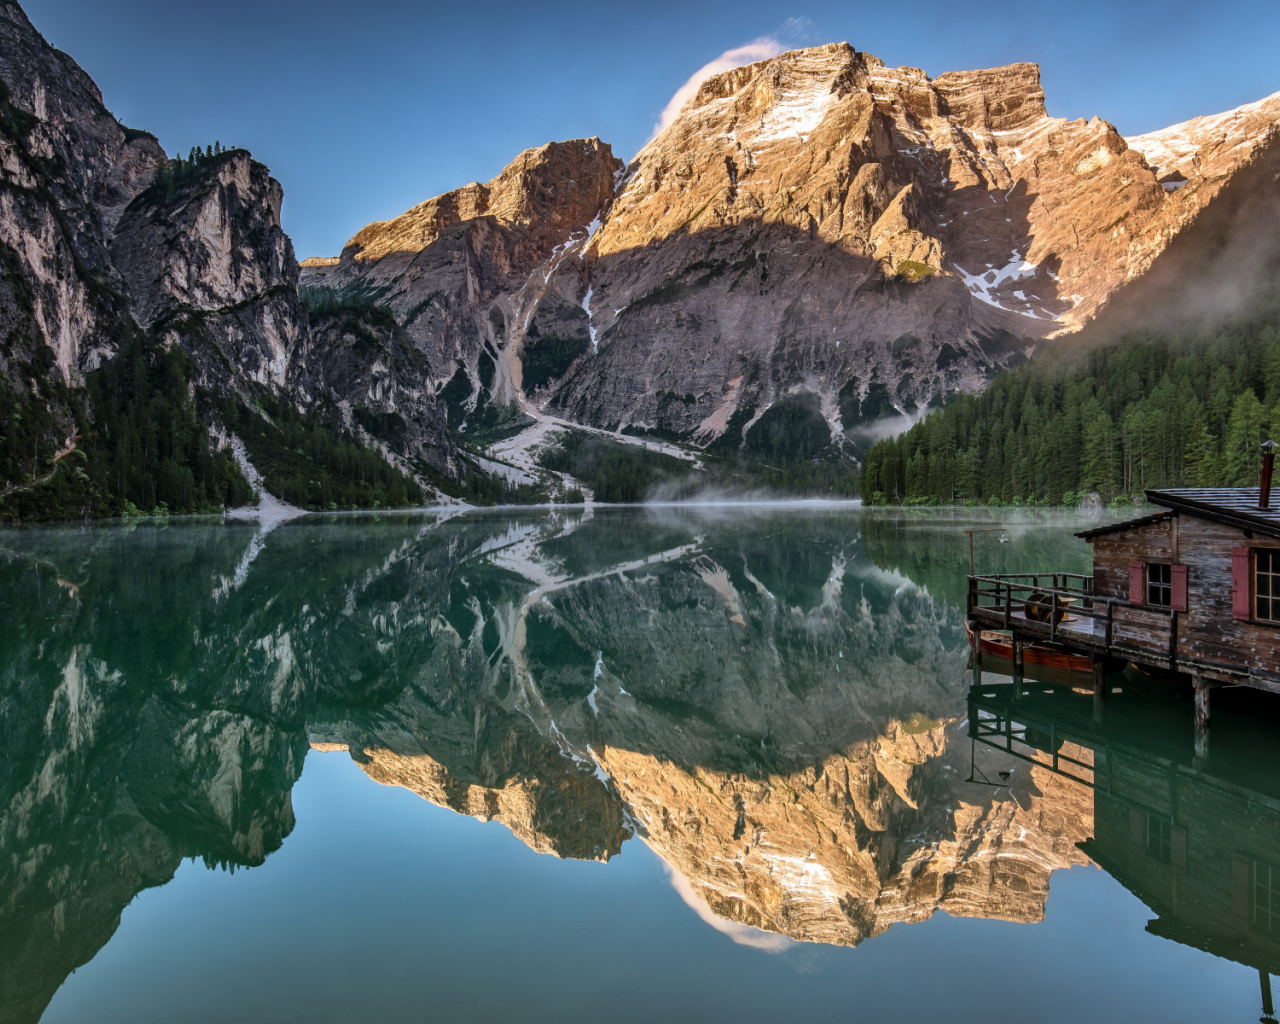 озеро, горы, отражение